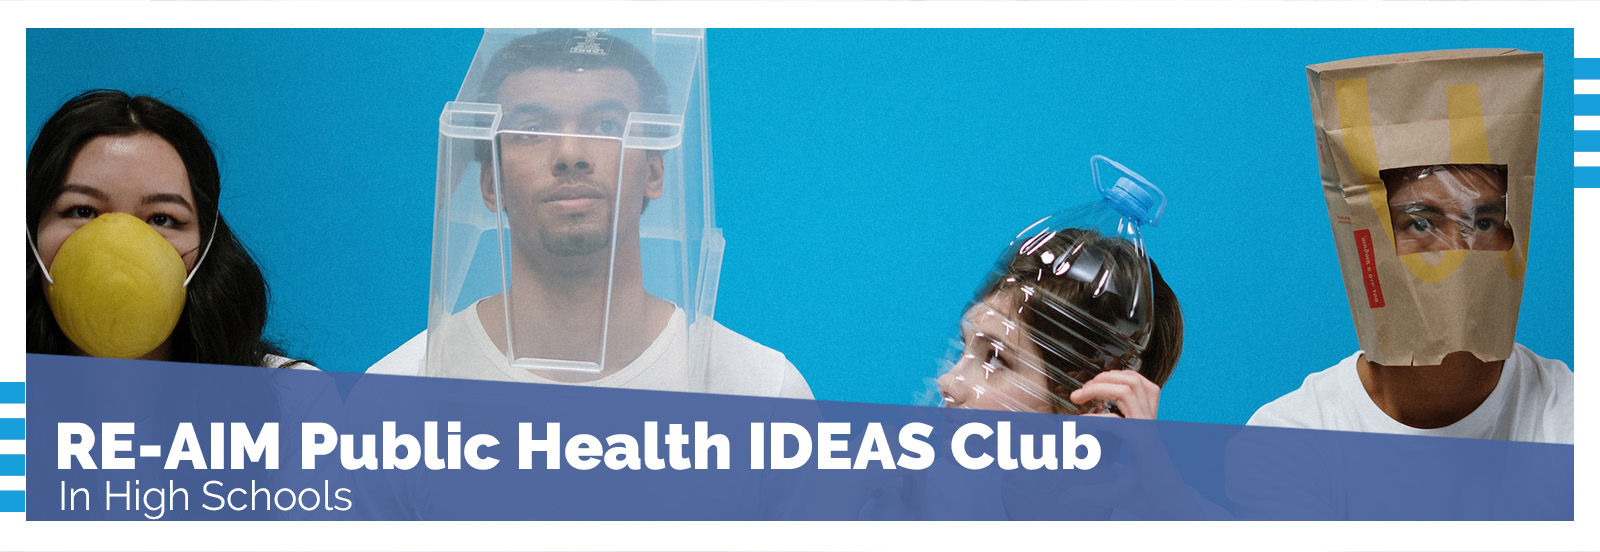 RE-AIM Public Health IDEAS Club in High Schools